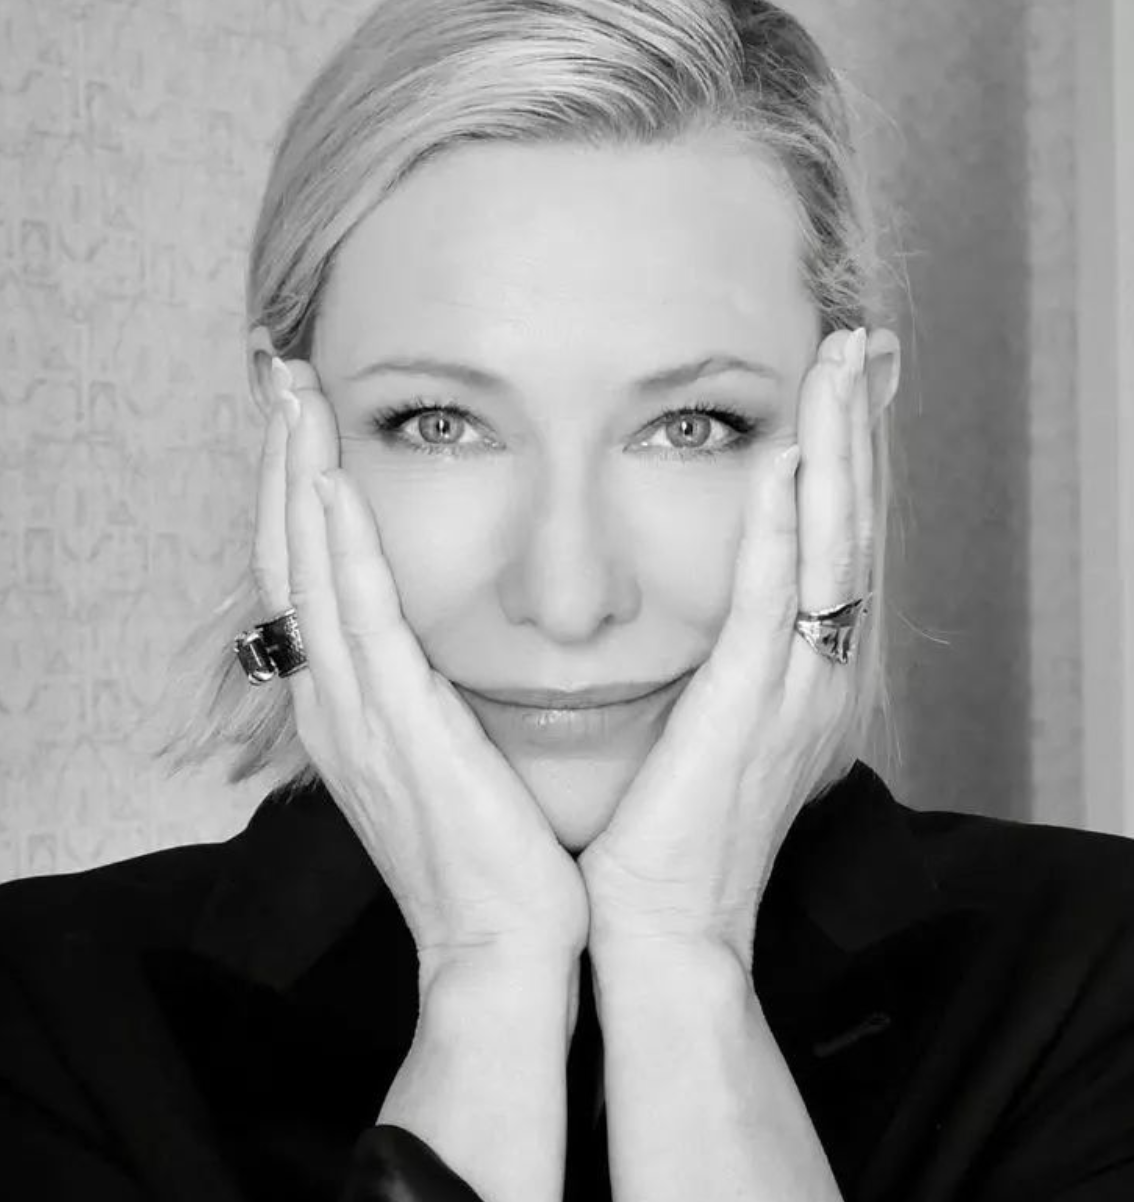 Cate Blanchett's Anti-Aging Diet